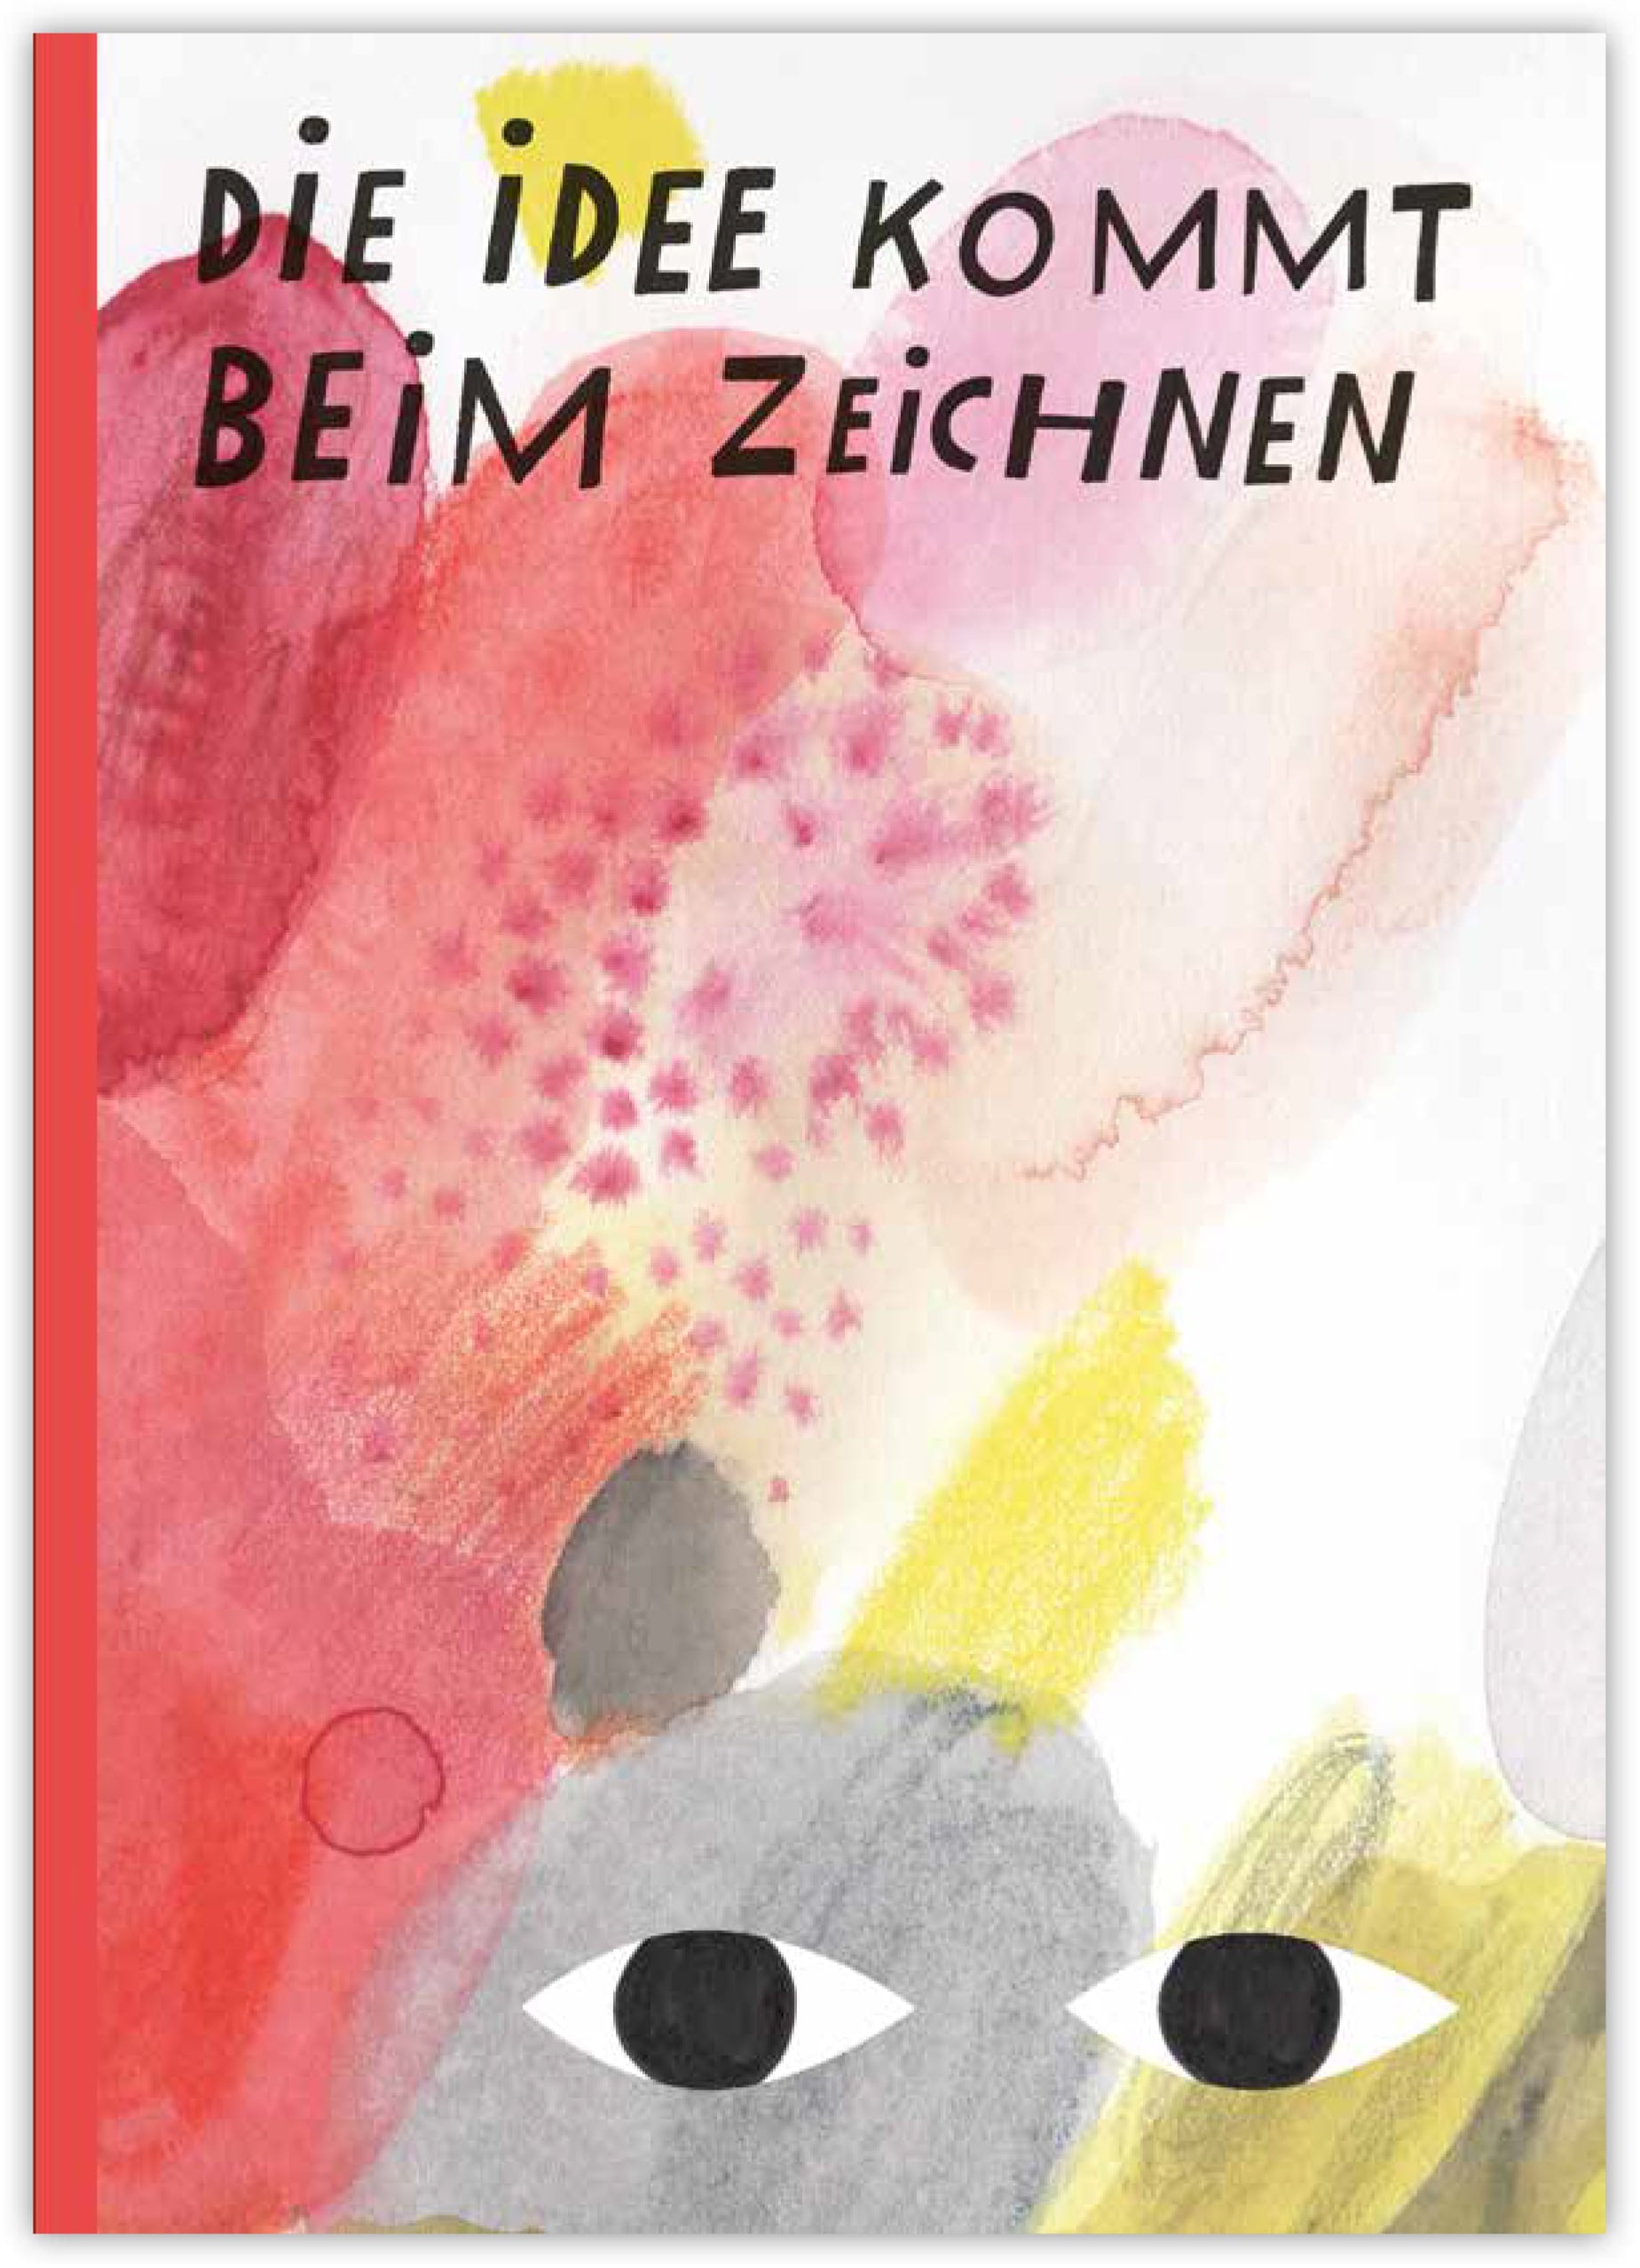 Cover von Malin Widéns Zeichenzimmer-Publikation. Bild: zvg